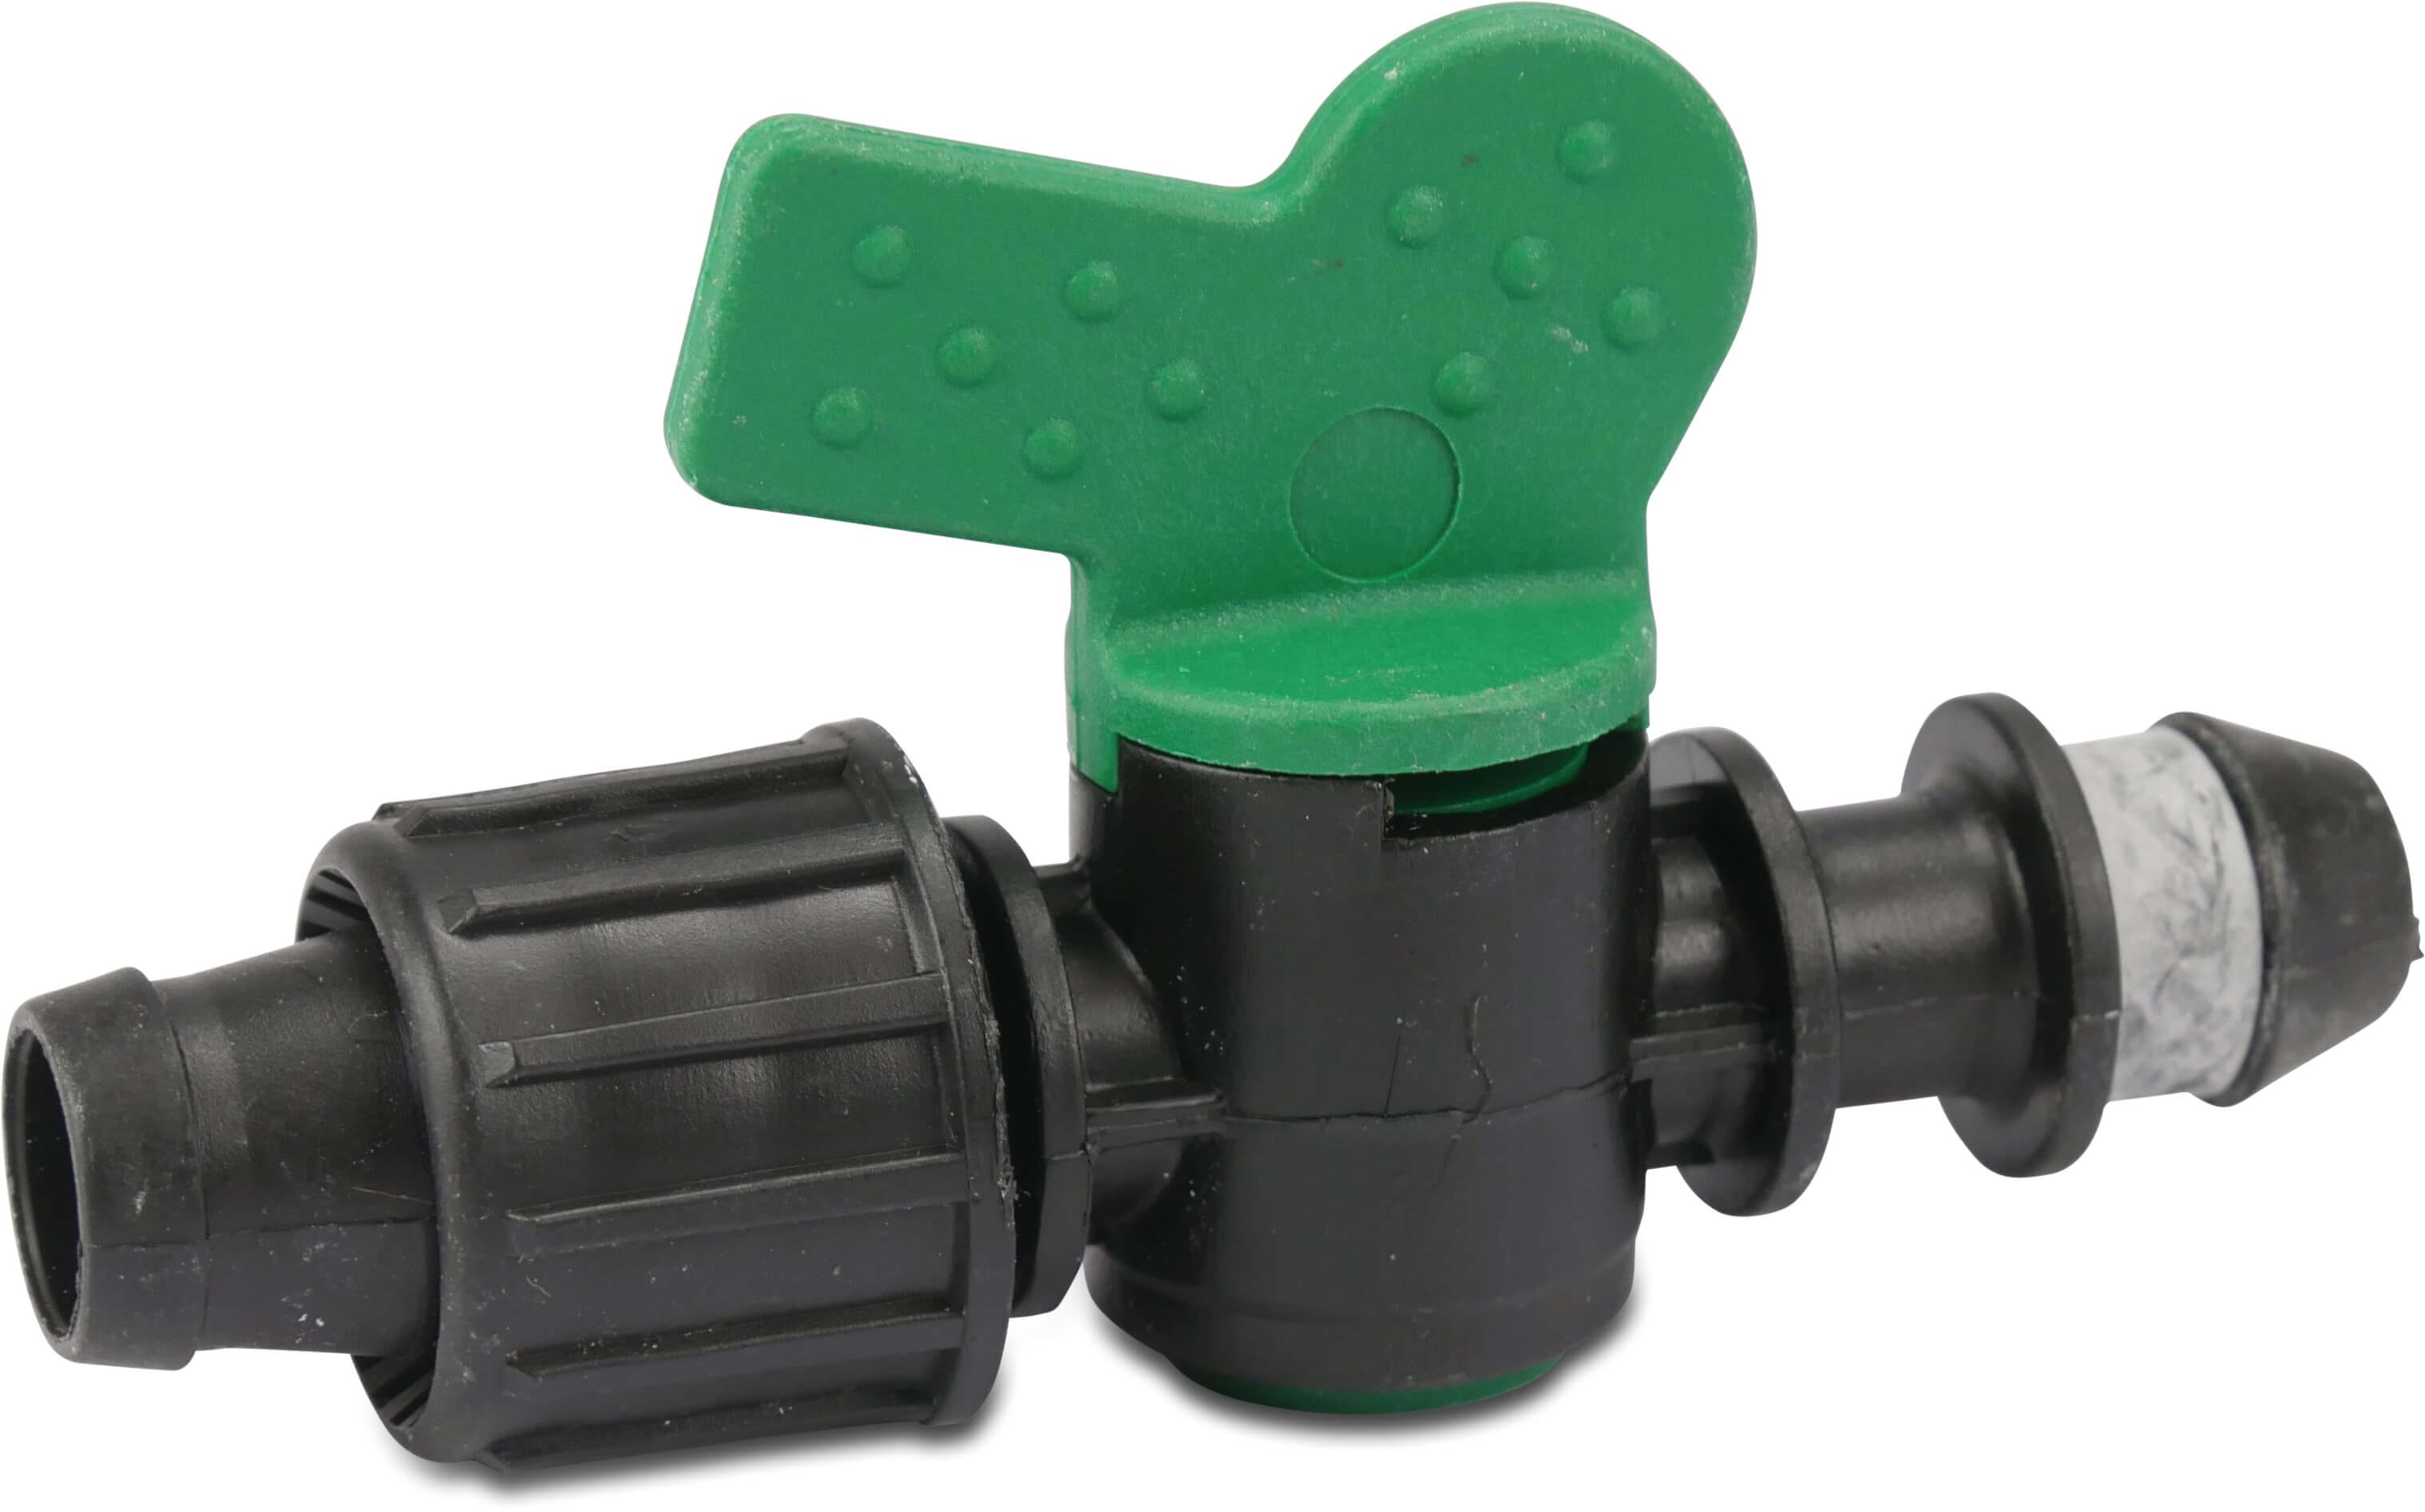 Miniventil PP 22 mm x 16 mm push-in x tejp 3bar svart/grön